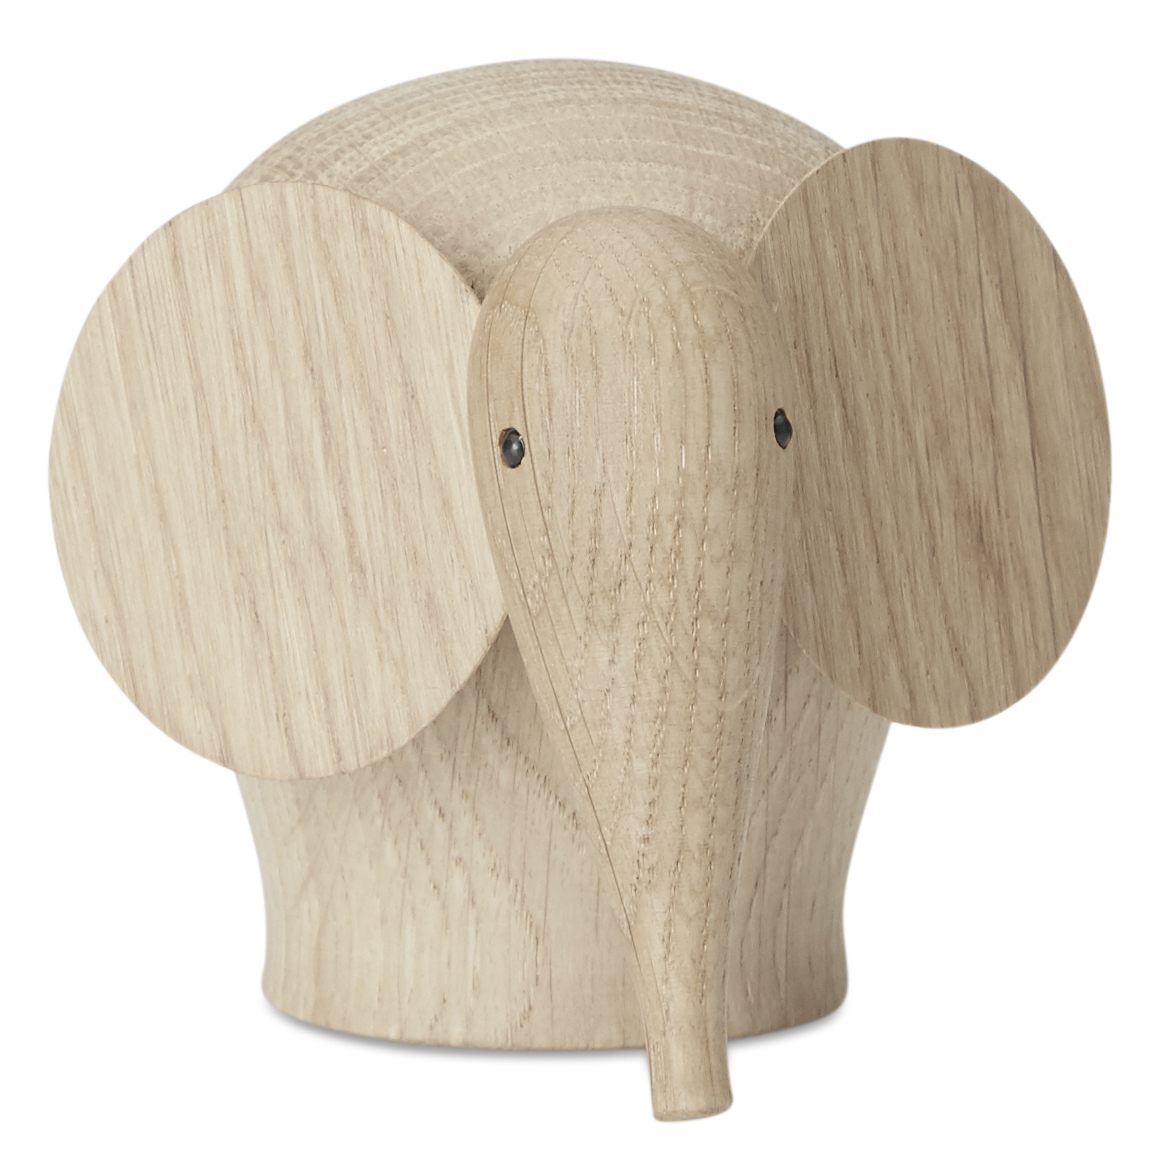 Billede af Nunu elephant elefant figur i egetræ - Mini